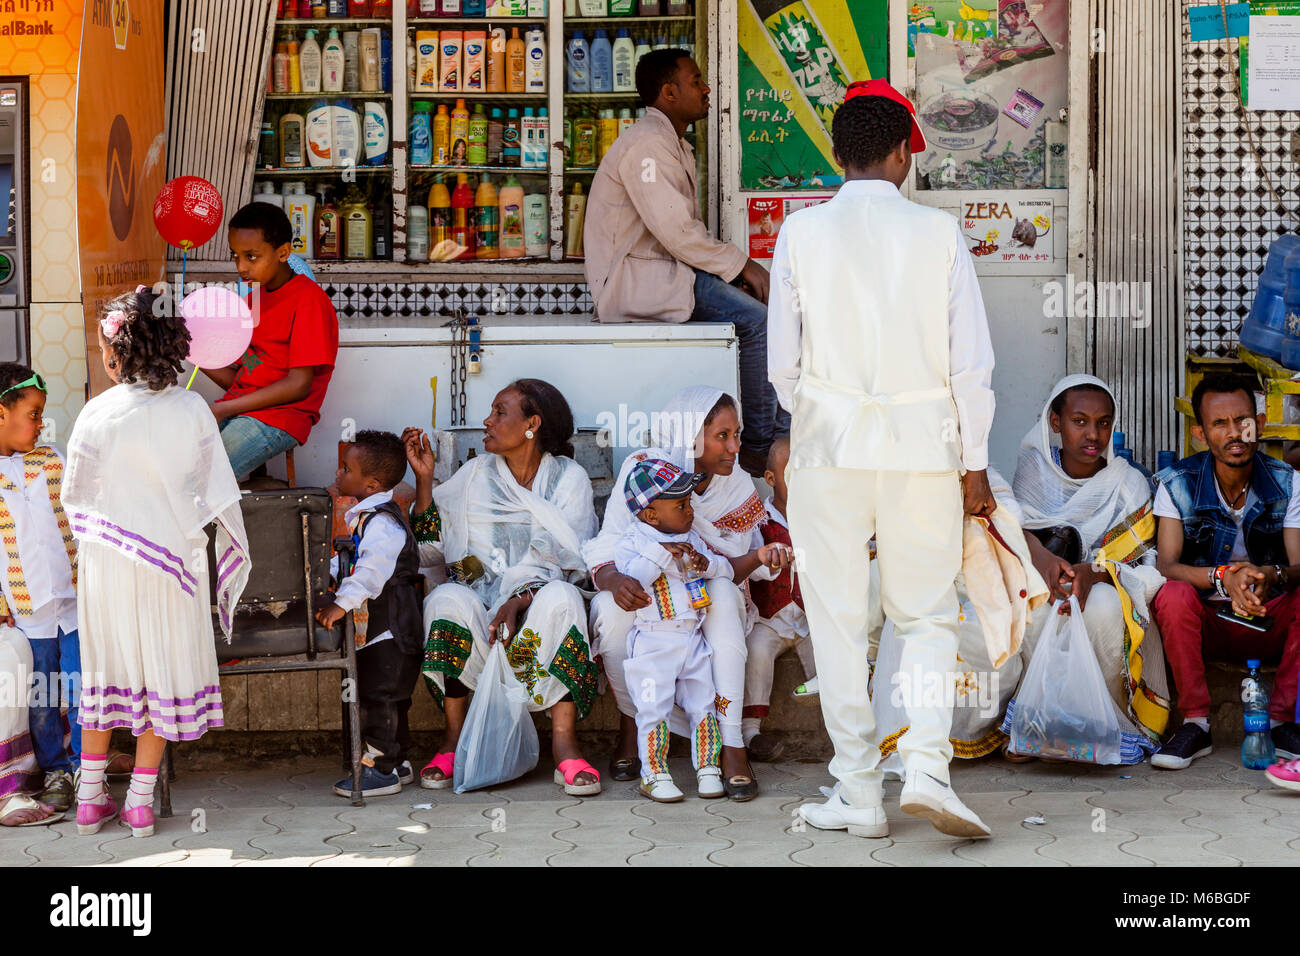 Les chrétiens éthiopiens assis à l'extérieur d'un magasin pendant les célébrations de Timkat (Epiphanie), Addis Abeba, Ethiopie Banque D'Images